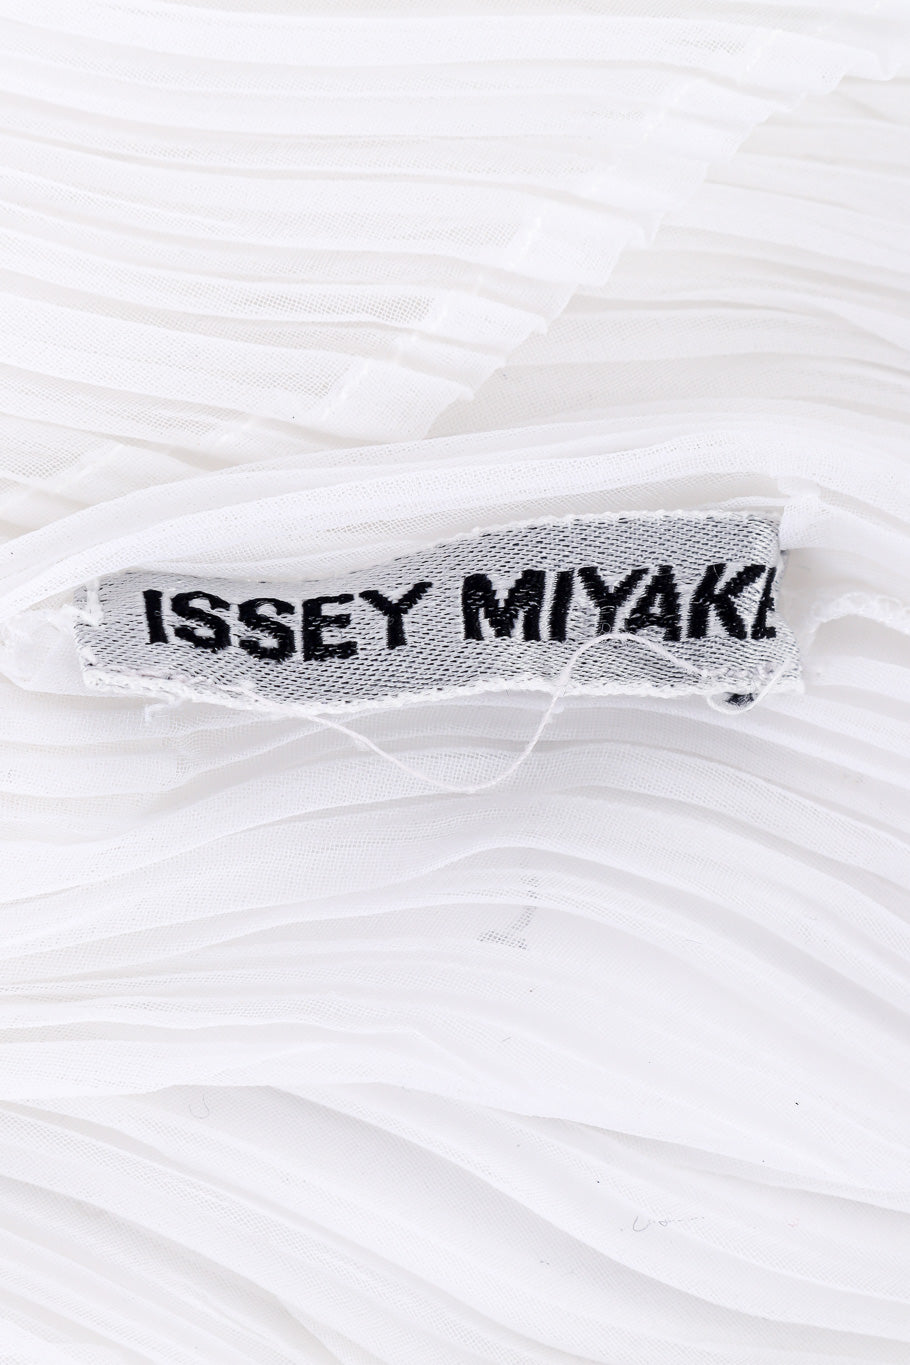 Issey Miyake Sheer Crepe Top label closeup @Recessla